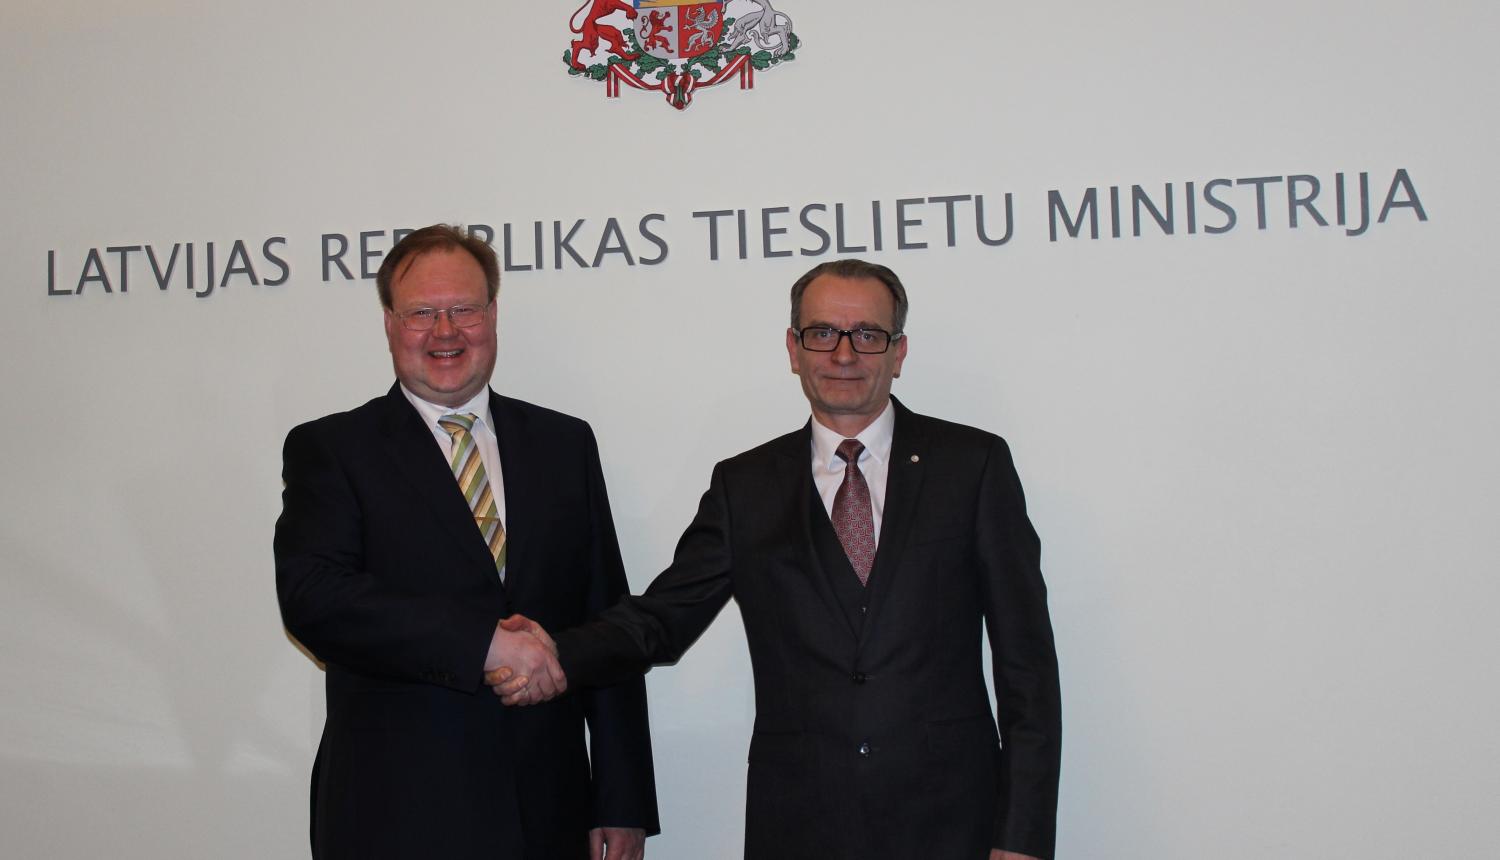 Tieslietu ministrs Dzintars Rasnačs informē Igaunijas vēstnieku par Latvijas prezidentūras ES Padomē prioritātēm tieslietās